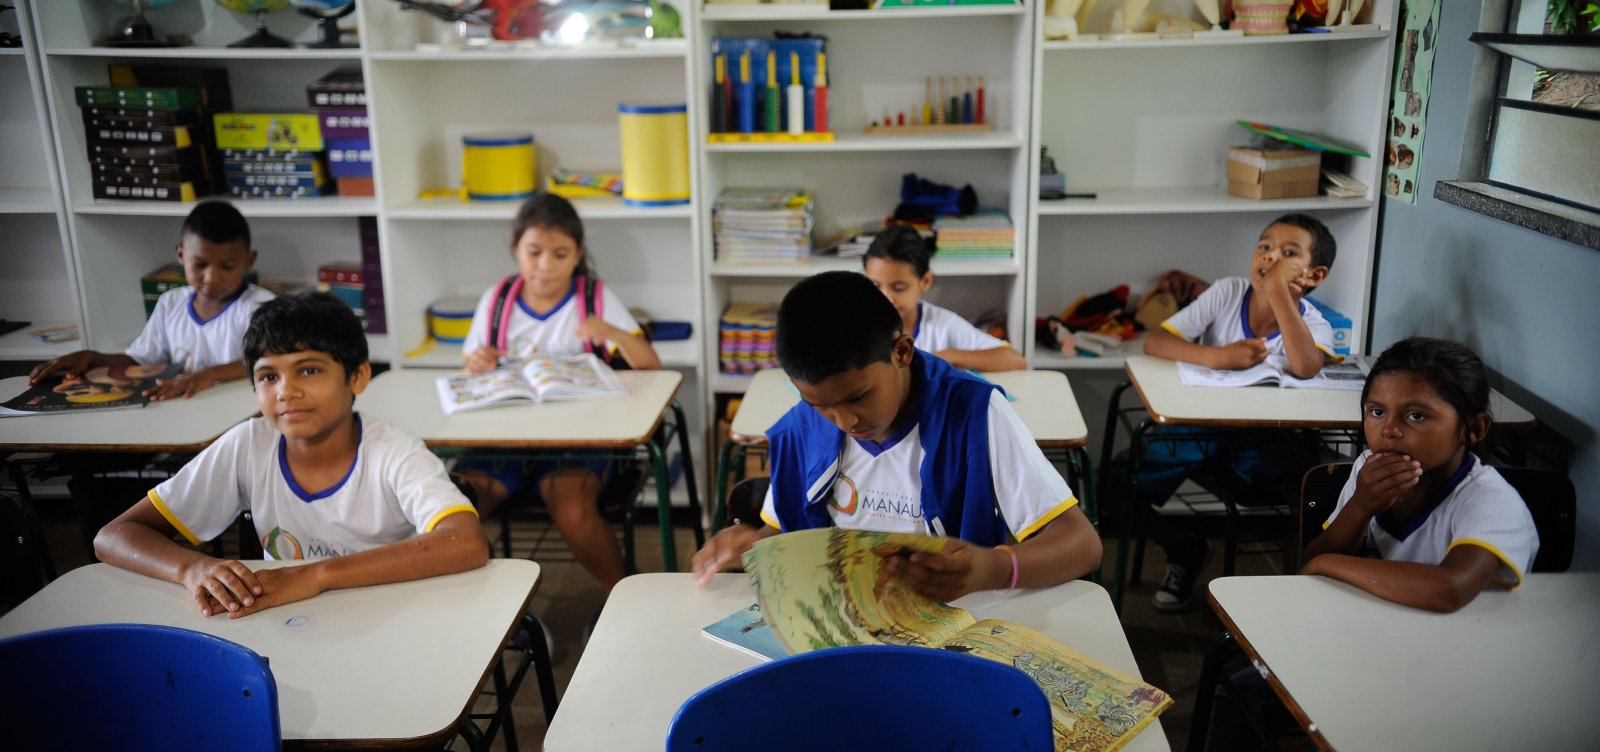 Governo suspende prova de avaliação da alfabetização por dois anos